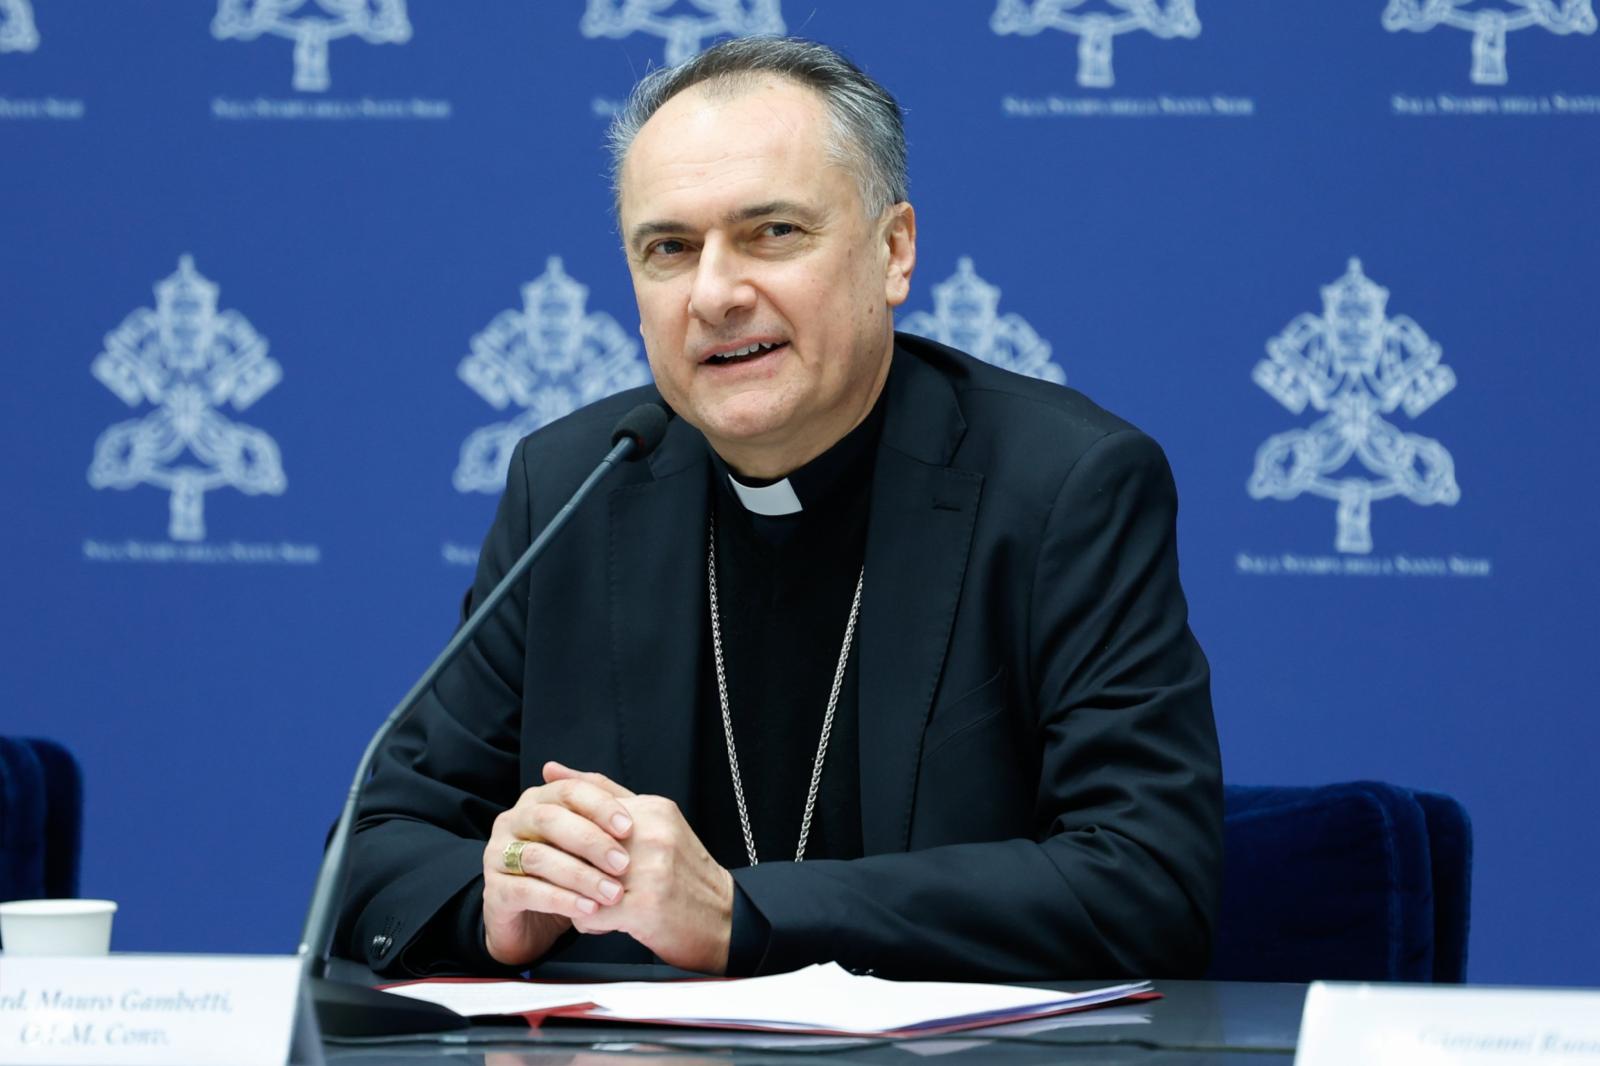 Cardinal Mauro Gambetti